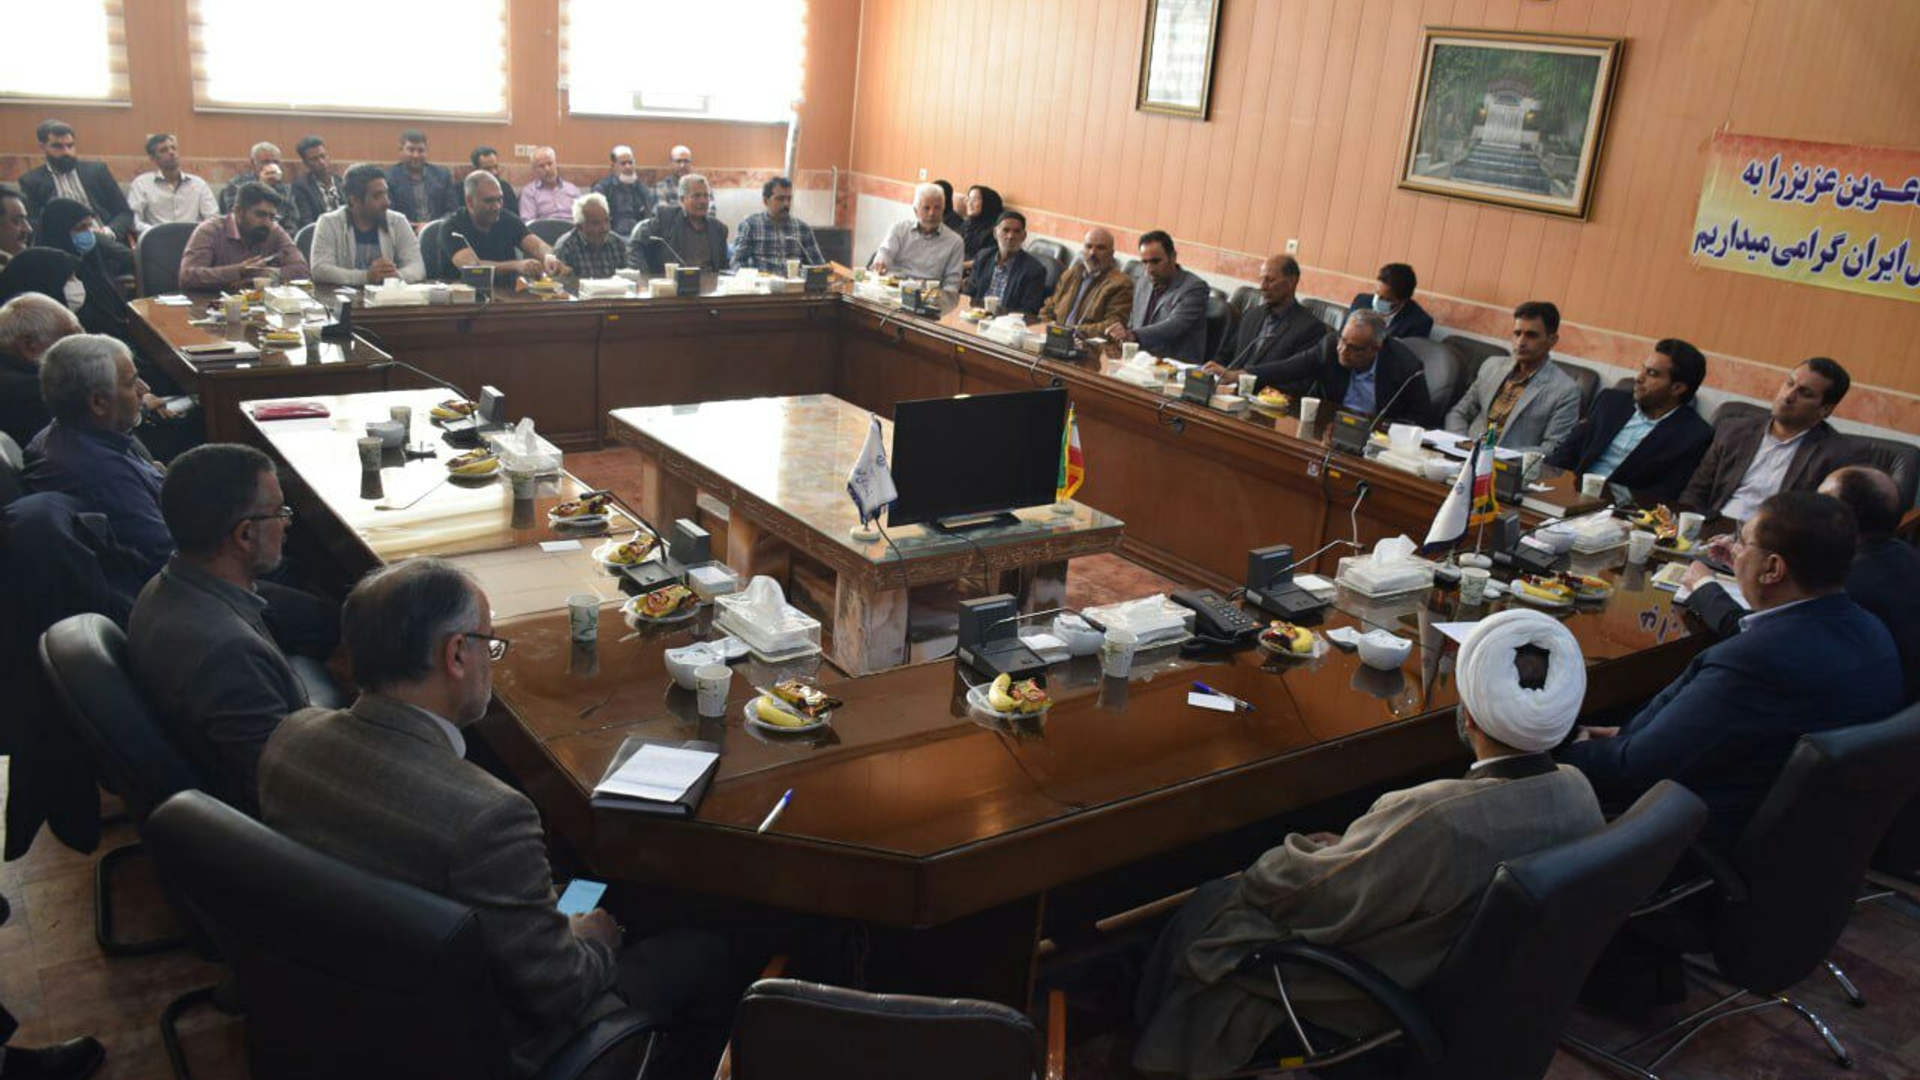 همایش تجلیل از اعضای شوراهای اسلامی روستاها در فرمانداری شهرستان محلات برگزار شد.